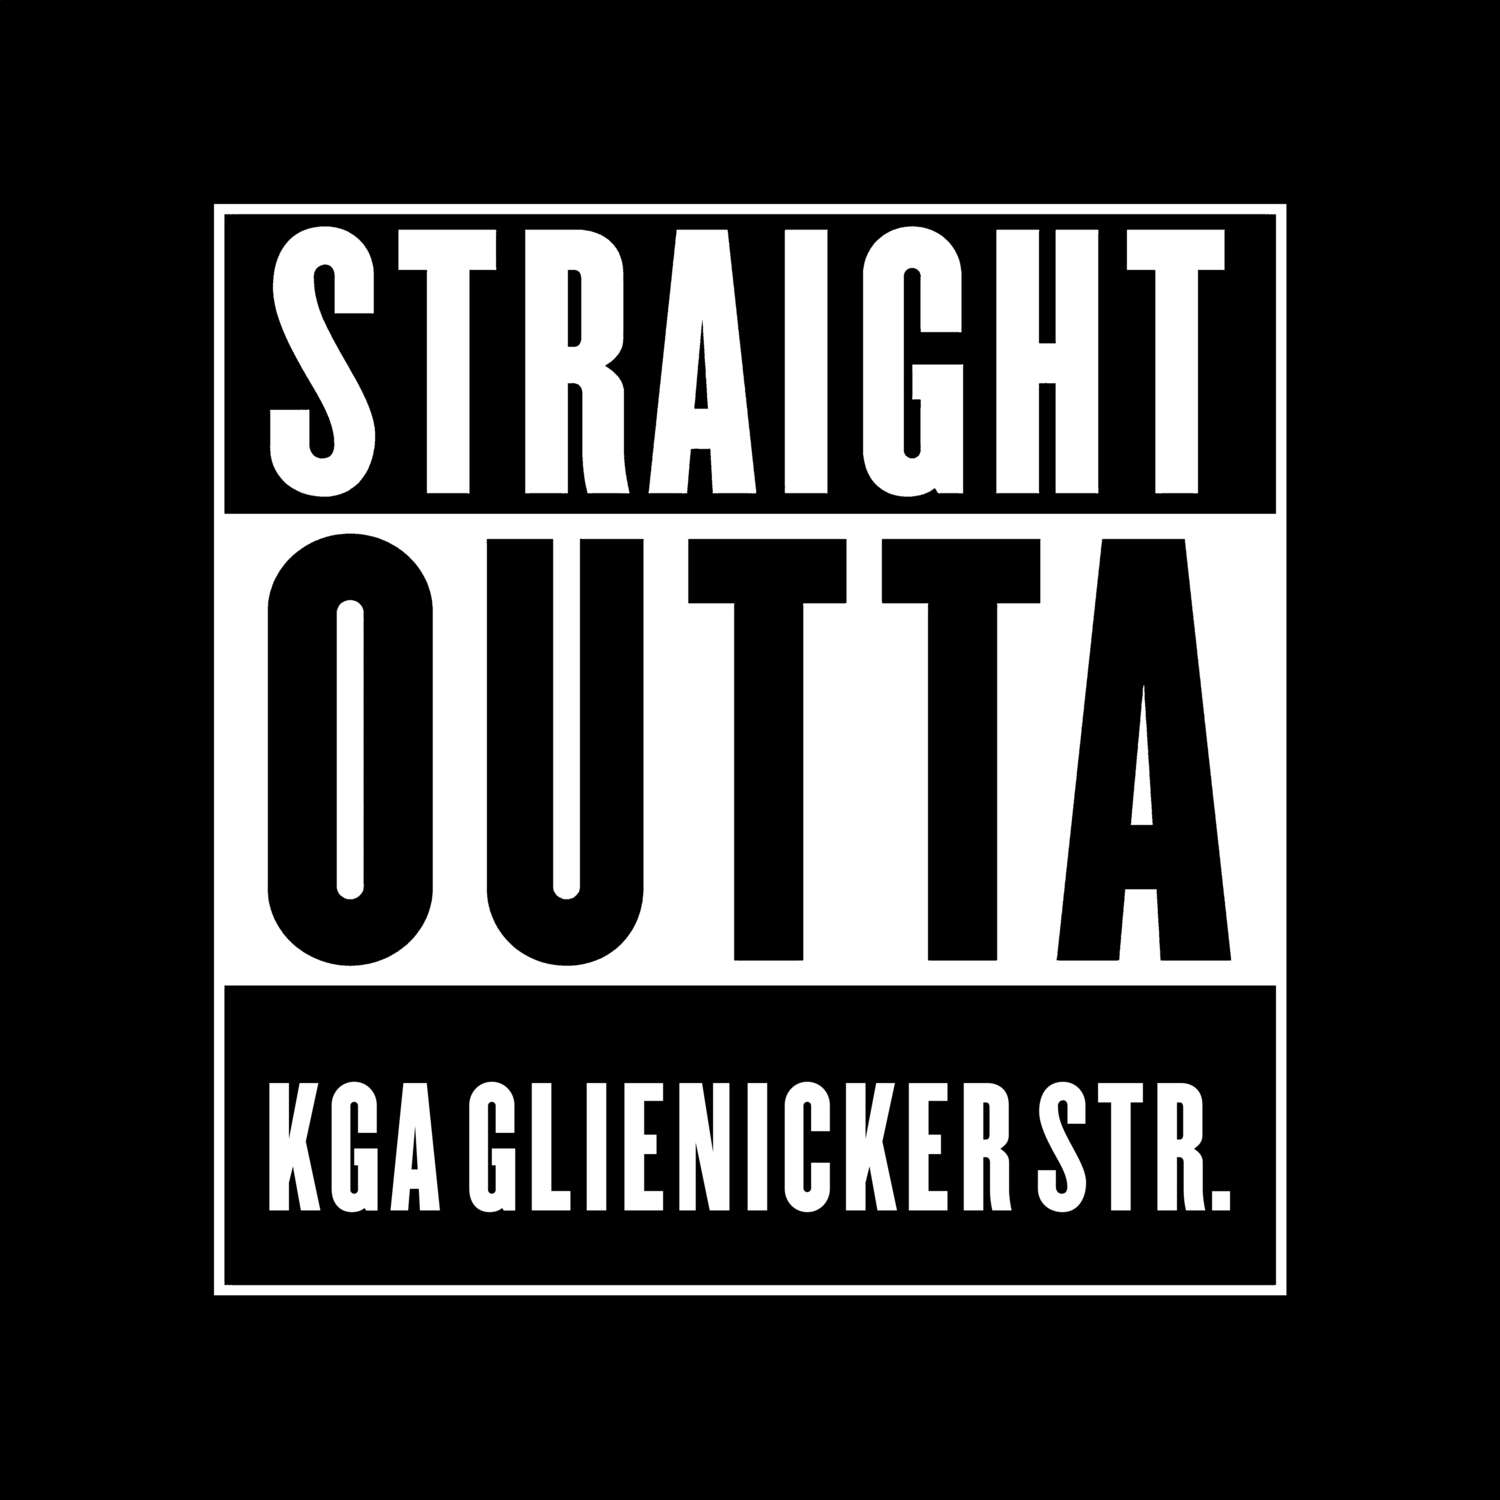 KGA Glienicker Str. T-Shirt »Straight Outta«